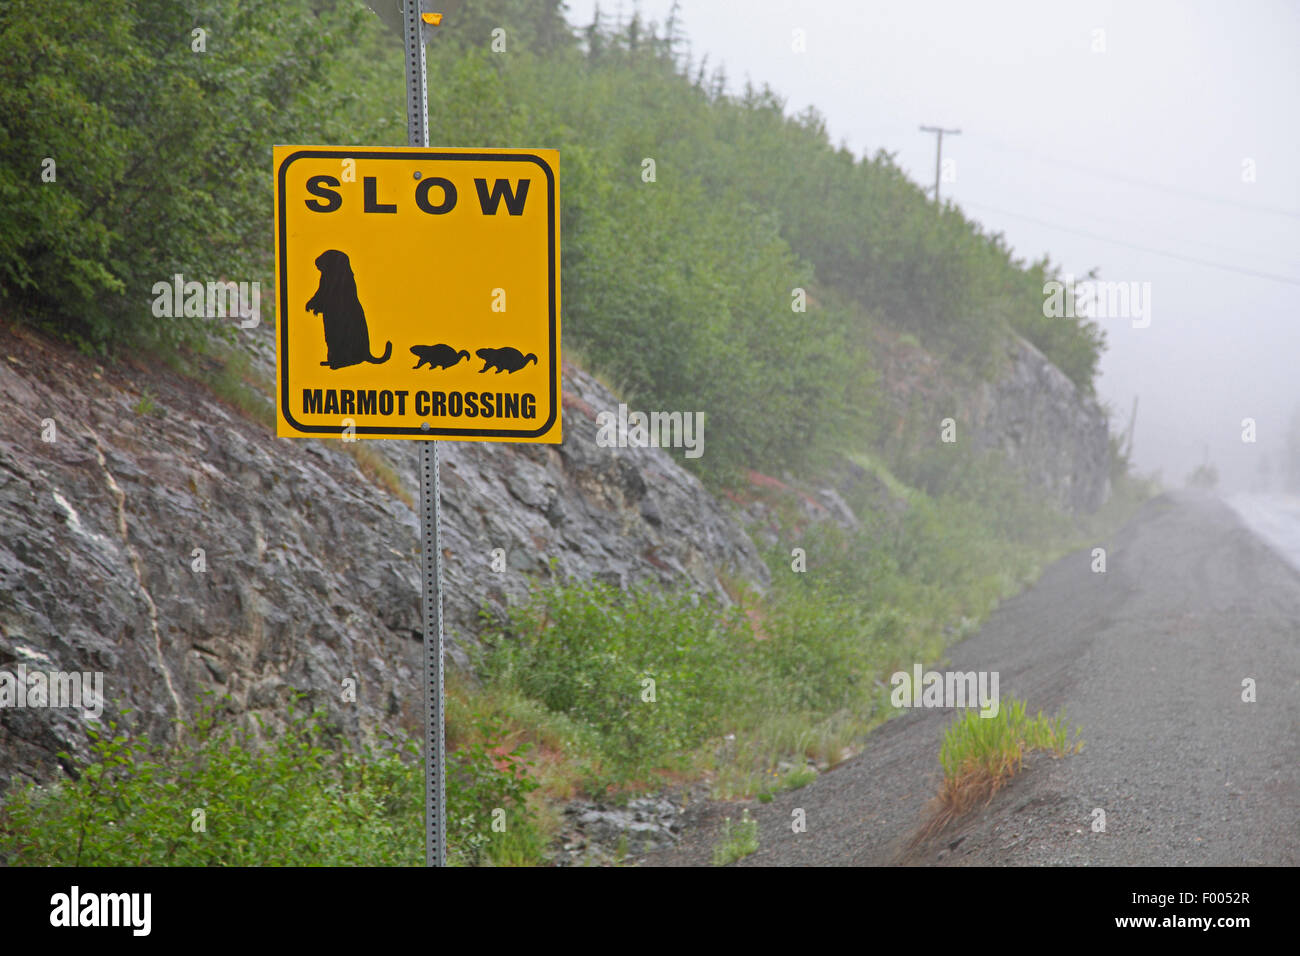 La marmota de la isla de Vancouver (Marmota vancouverensis), Etiqueta de advertencia conduzca despacio, Canadá, Vancouver Island, el Mount Washington Foto de stock